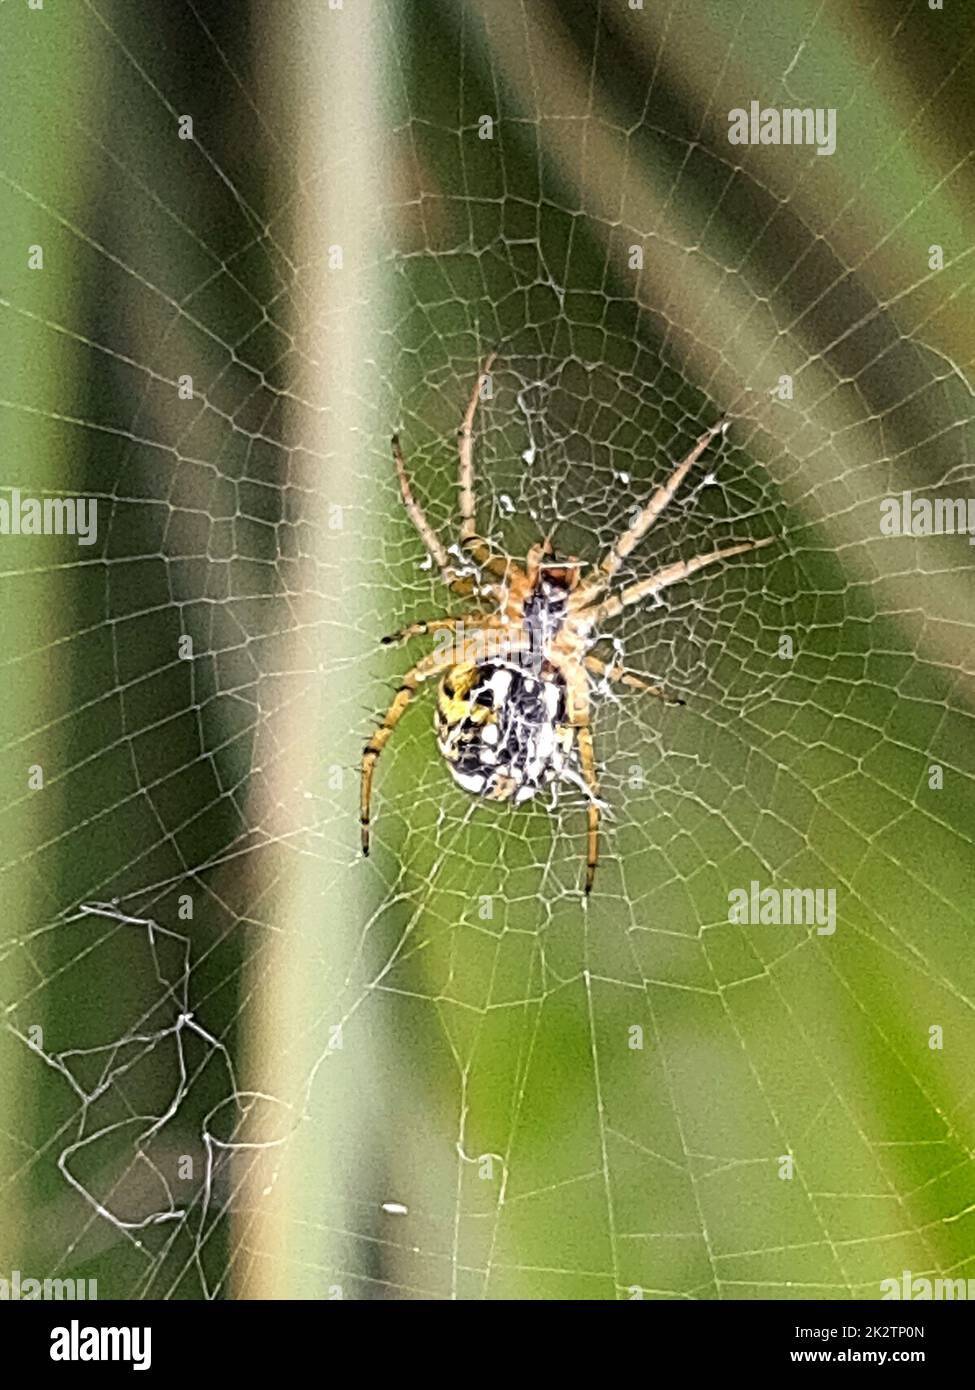 Das Netz, hinter dem sich eine Spinne befindet Stockfoto